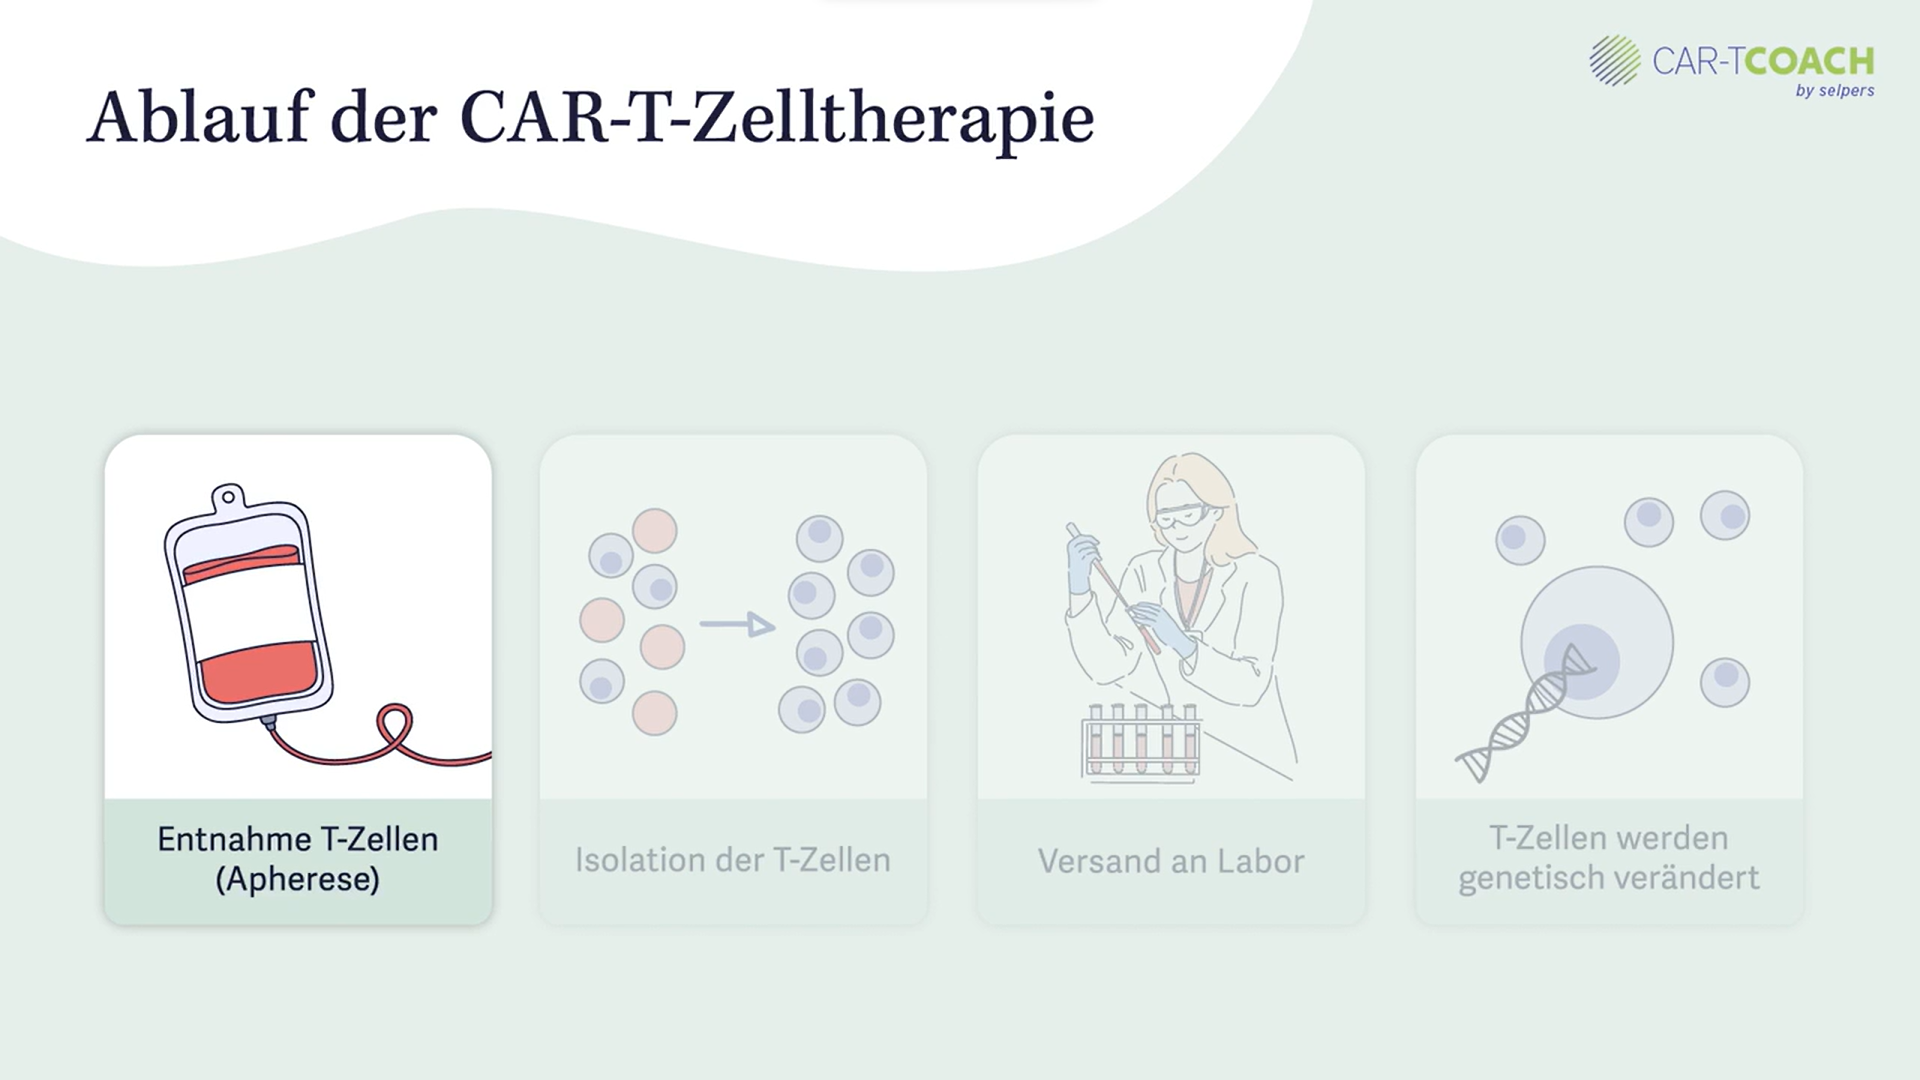 Ablauf der CAR-T-Zelltherapie: Apherese bis Labor